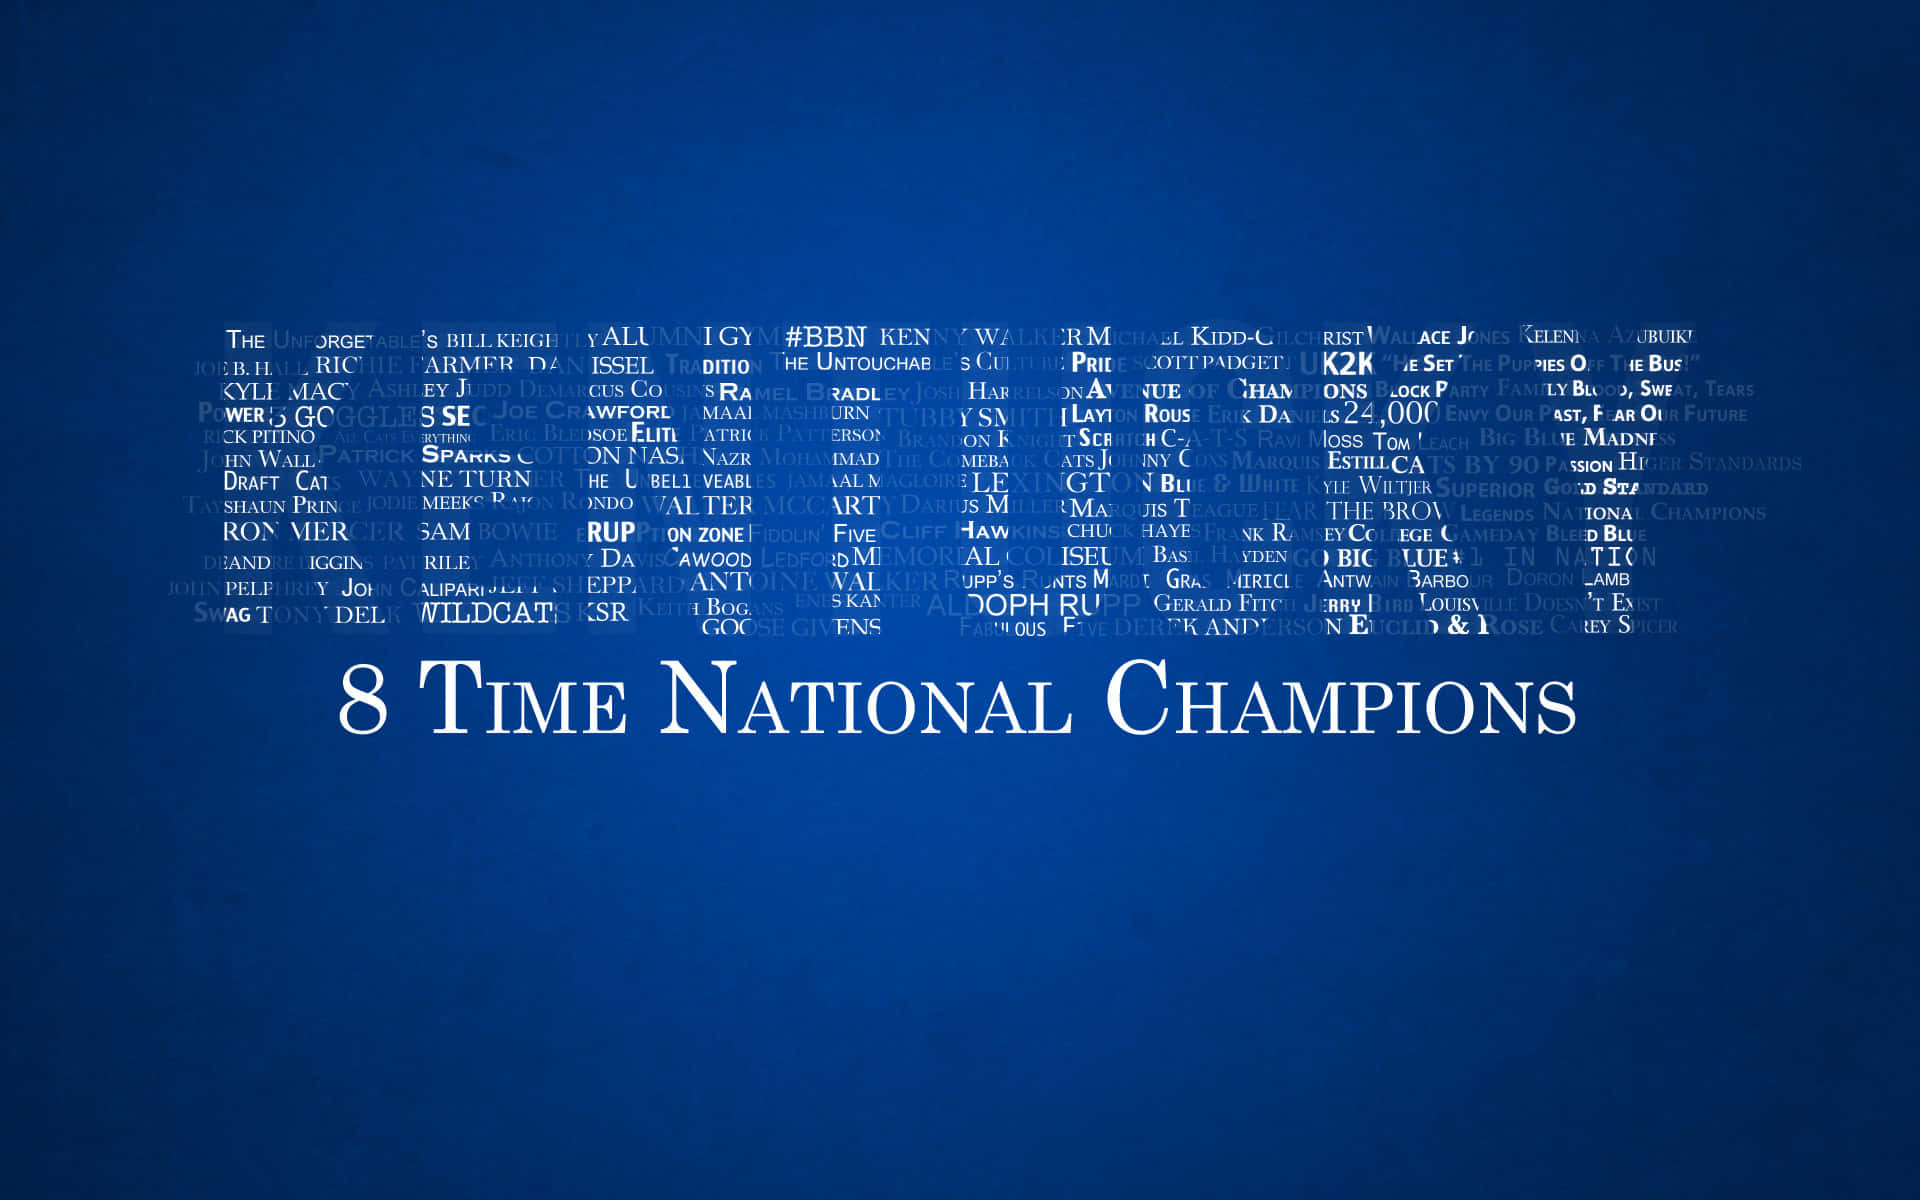 Kentuckywildcats Wallpaper Mit 8-fachen Nationalen Meistertiteln. Wallpaper